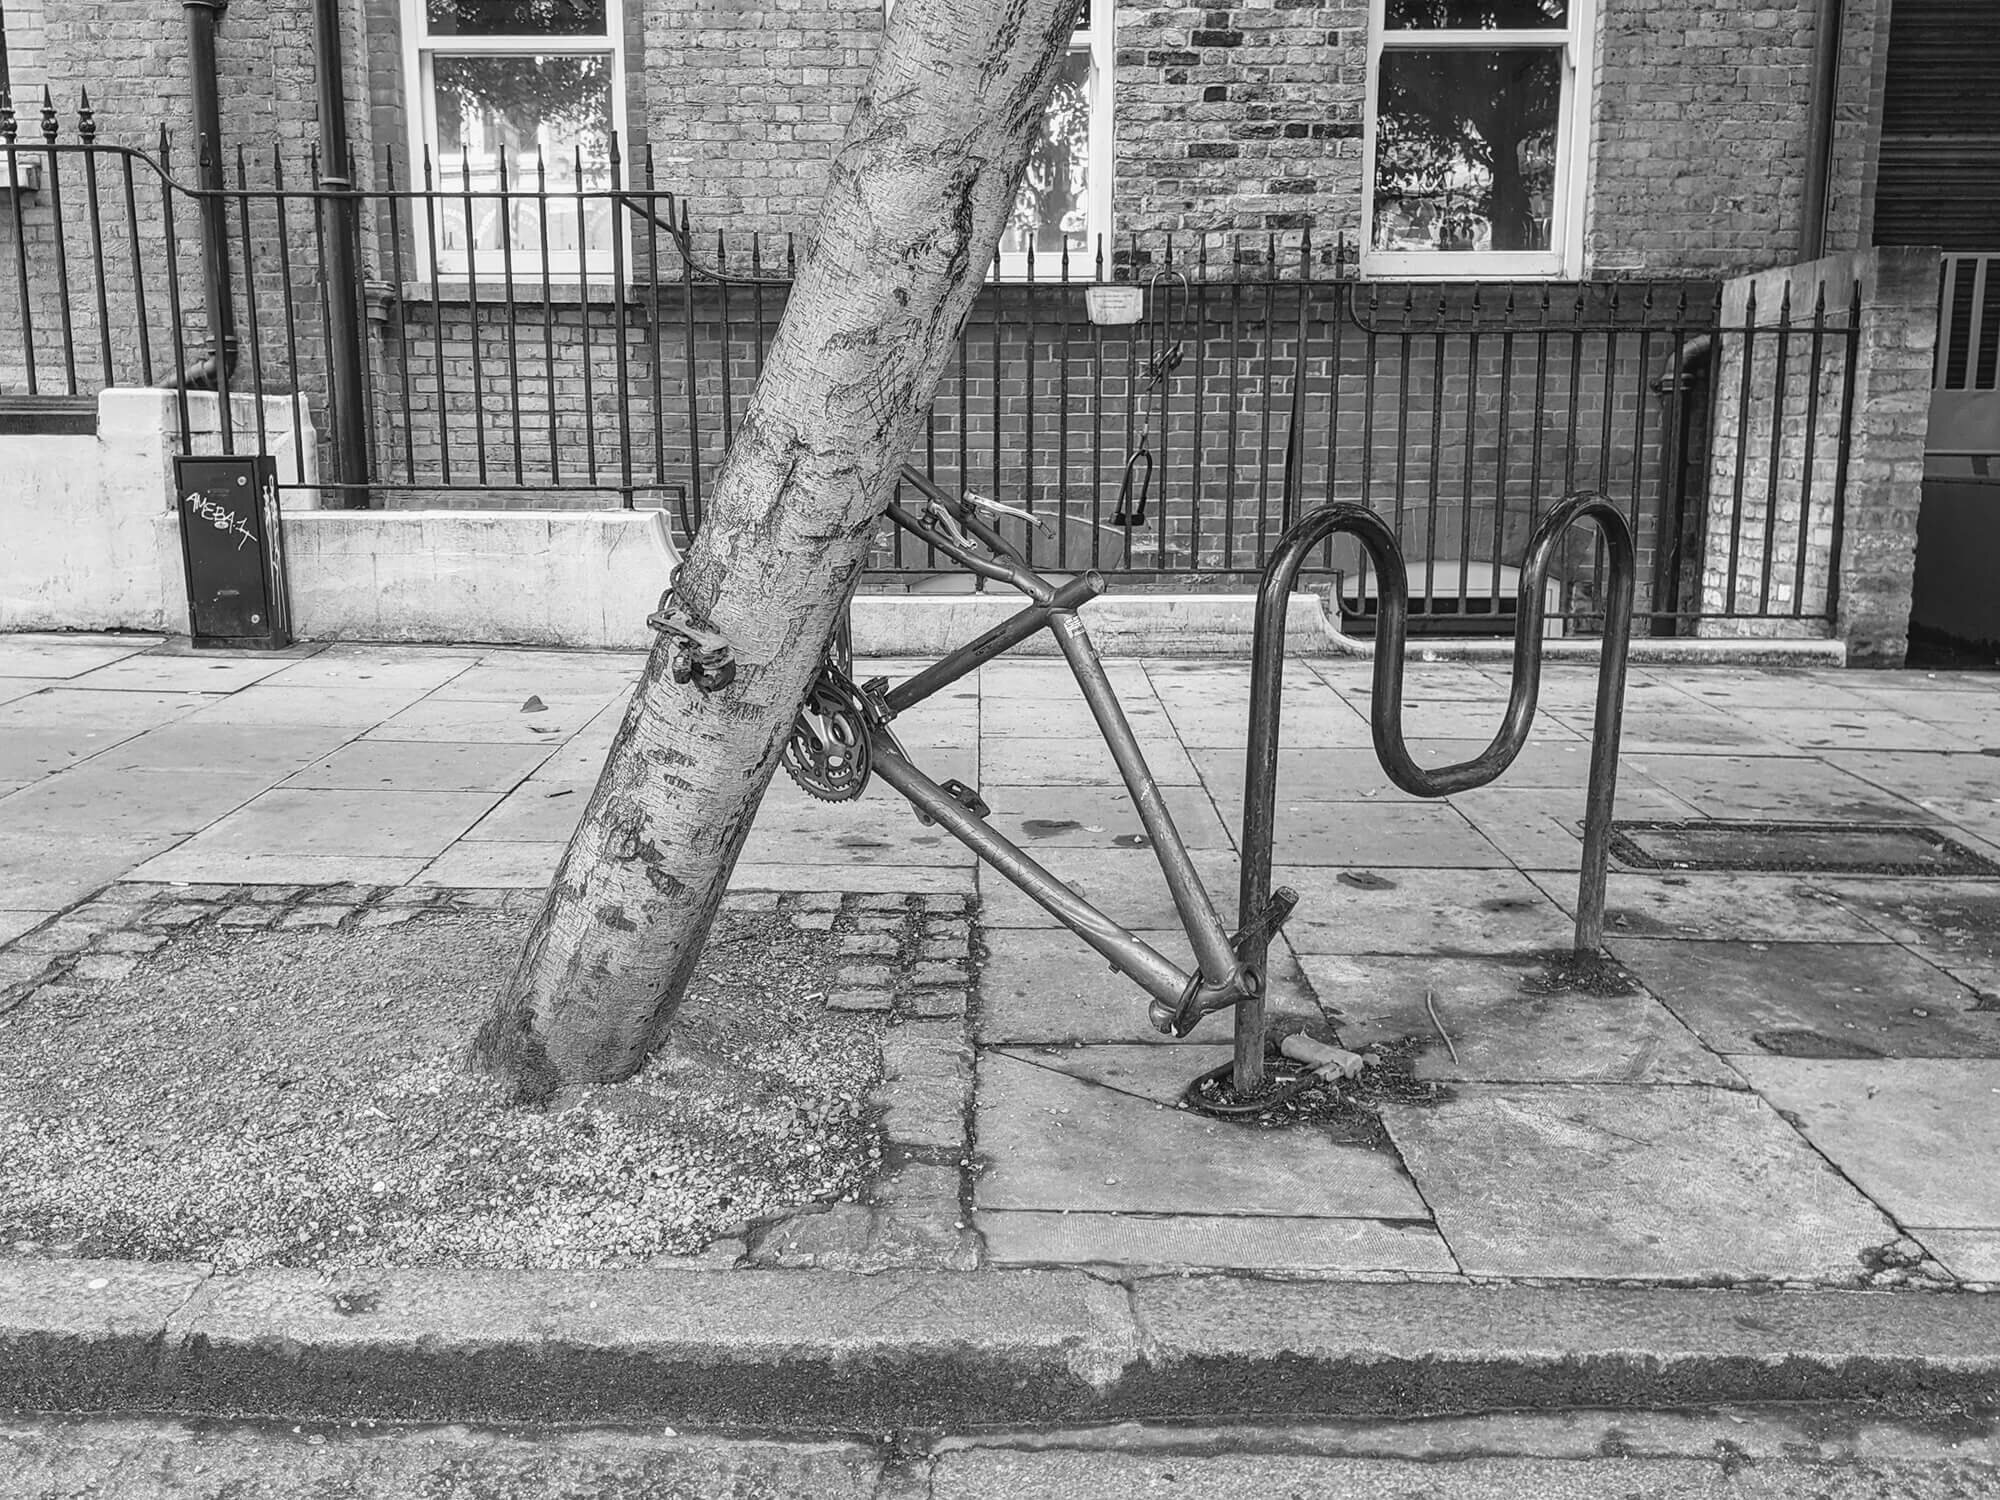 Upside down bike frame, leaning on tree in Hatton Garden, London.